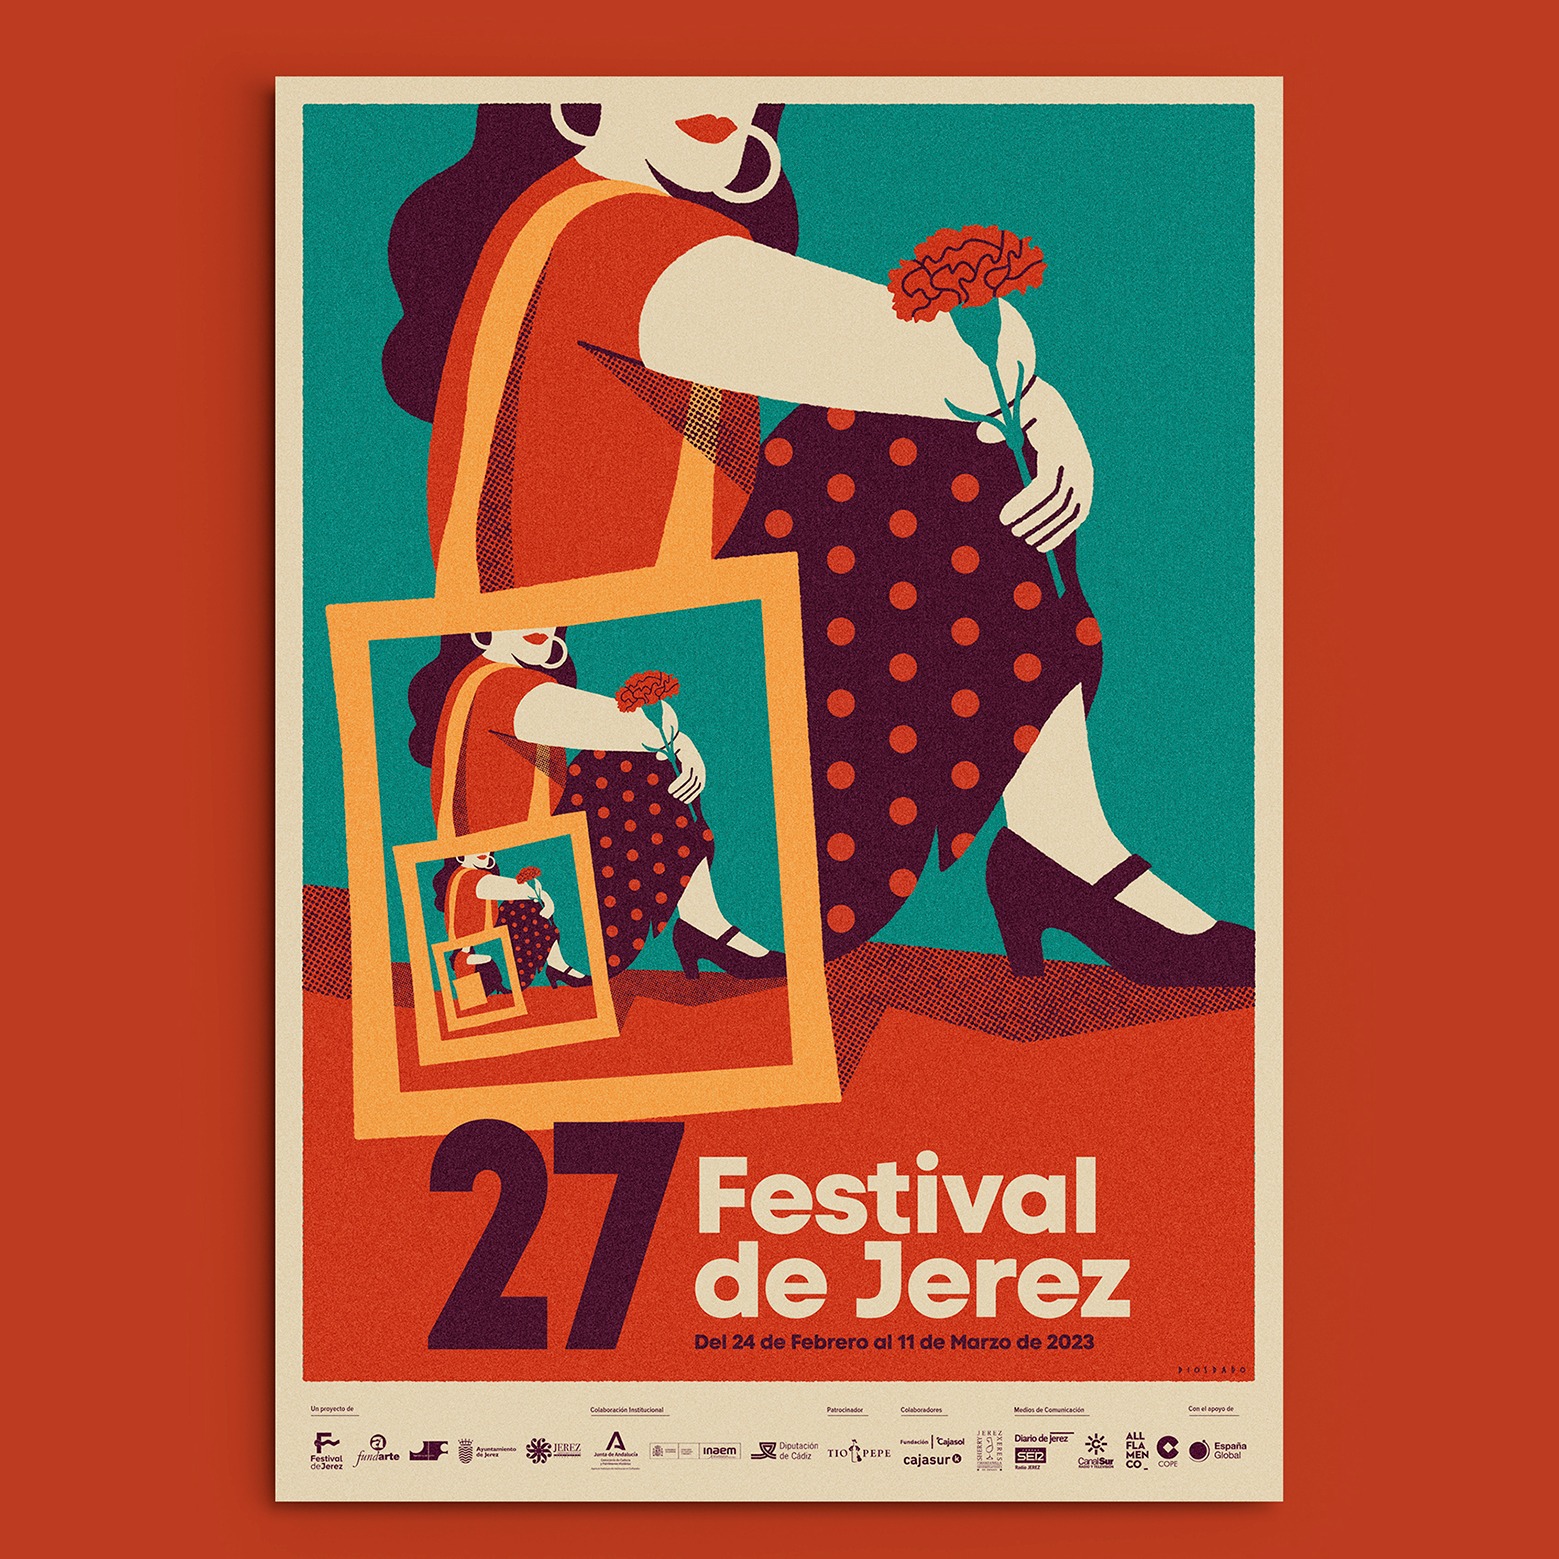 Festival de Jerez, una exhibición de arte flamenco: del 24 de febrero al 11 de marzo